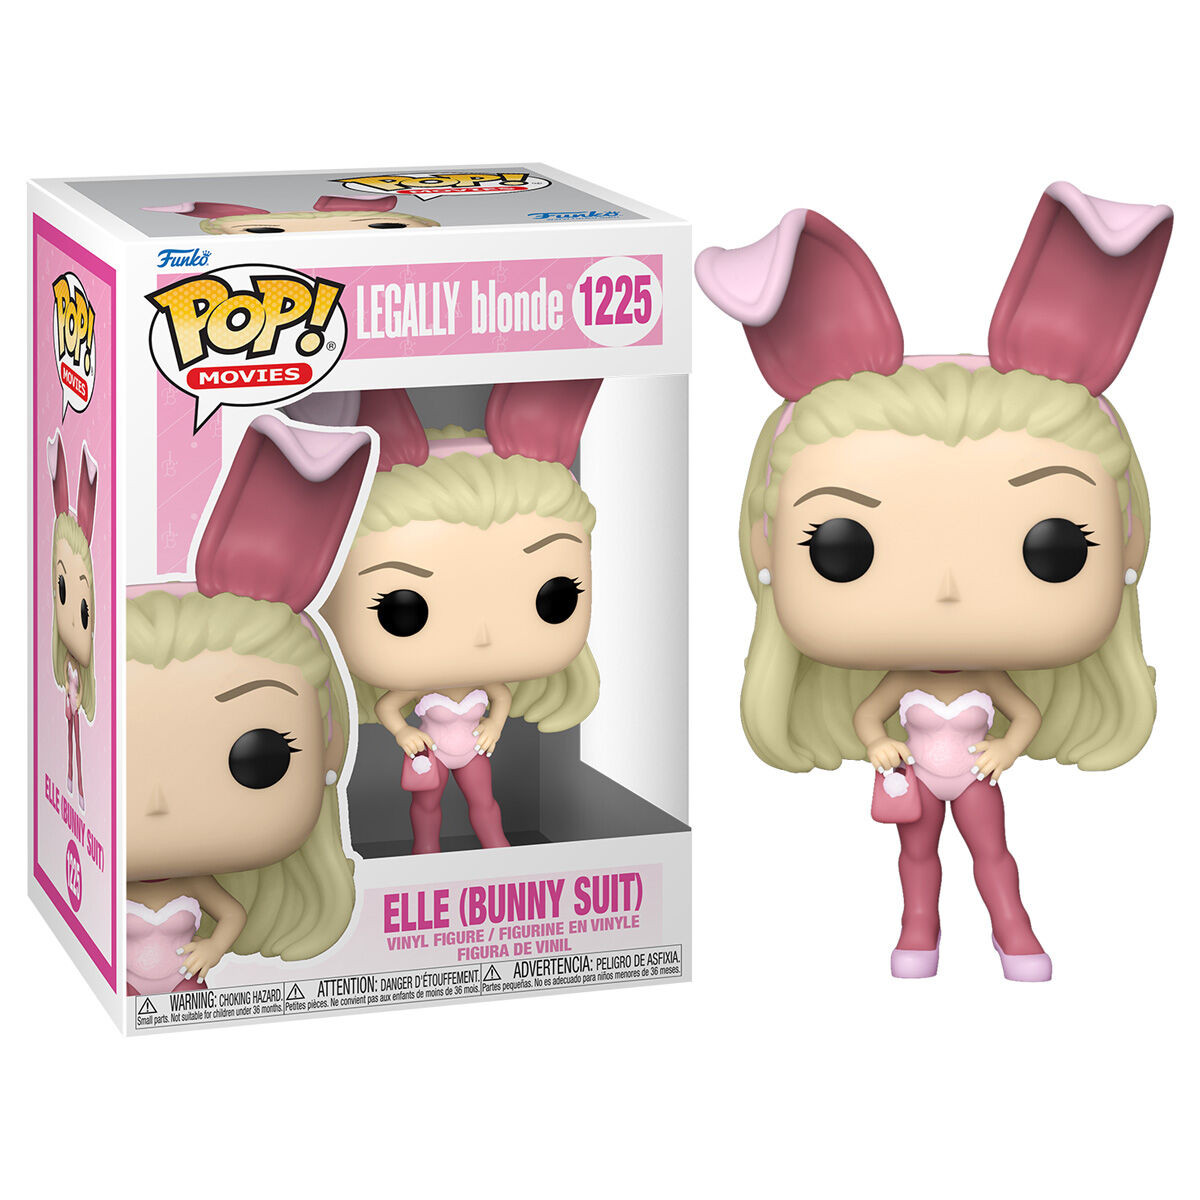 POP Figure Legally Blonde  Elle as Bunny 1225 FUNKO POP - 1